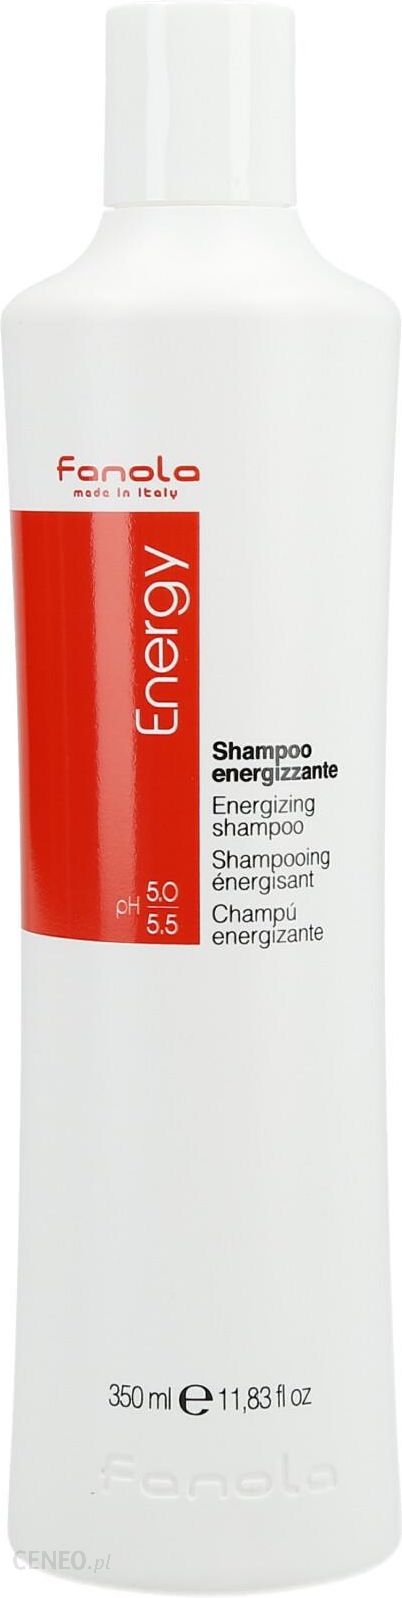 fanola energy szampon na wypadanie 350ml